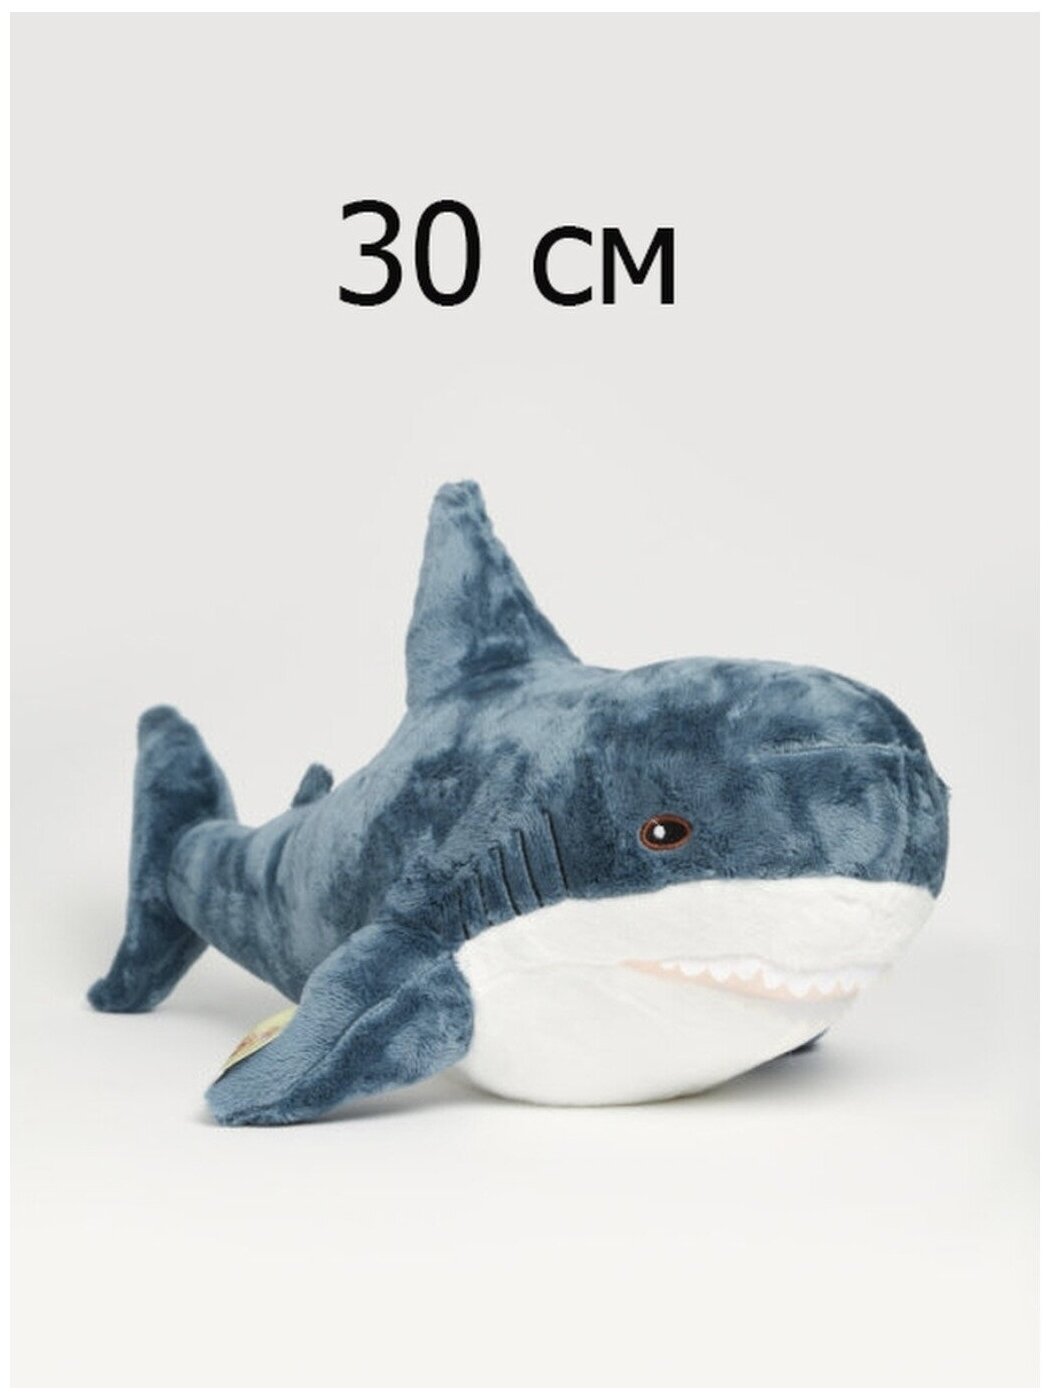 Мягкая игрушка Акула 30 см плюшевая синяя подарок для детей/ для мальчиков и девочек антистресс длинная из икеа ikea почти 40 см